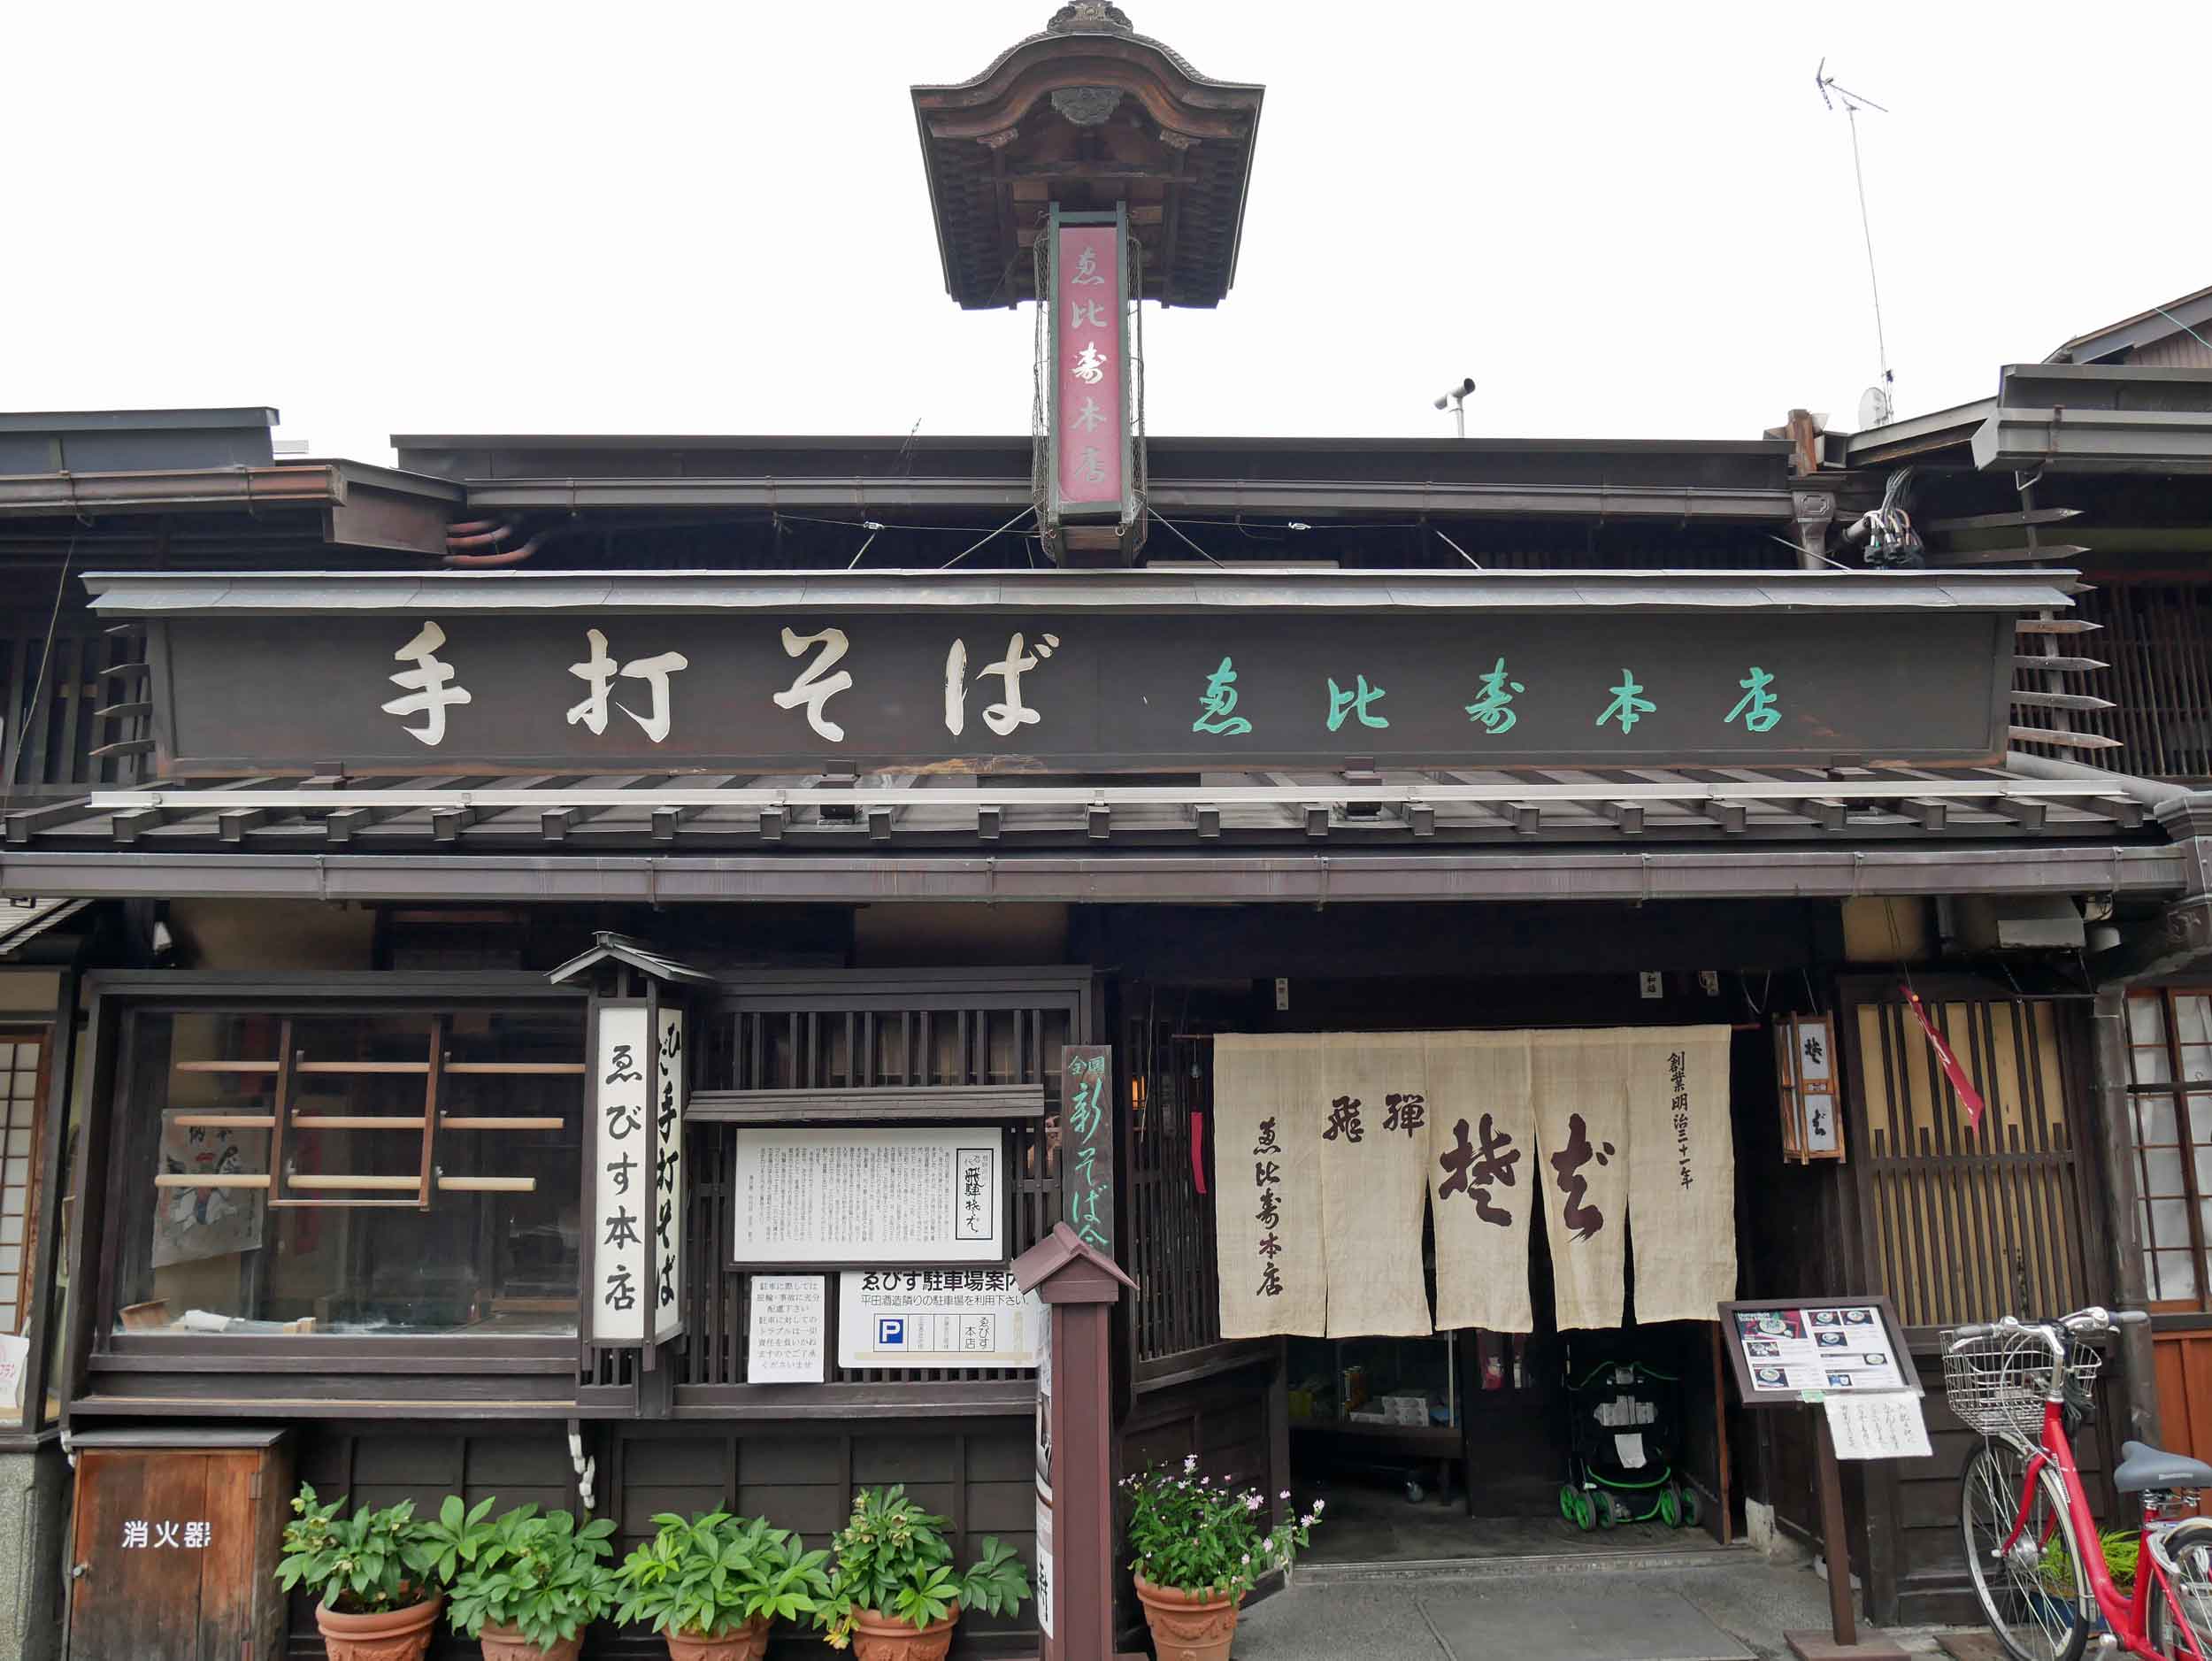  Arriving in Takayama, we made a b-line for Ebisu-Honten restaurant for their famed handmade teuchi soba (June 18). 